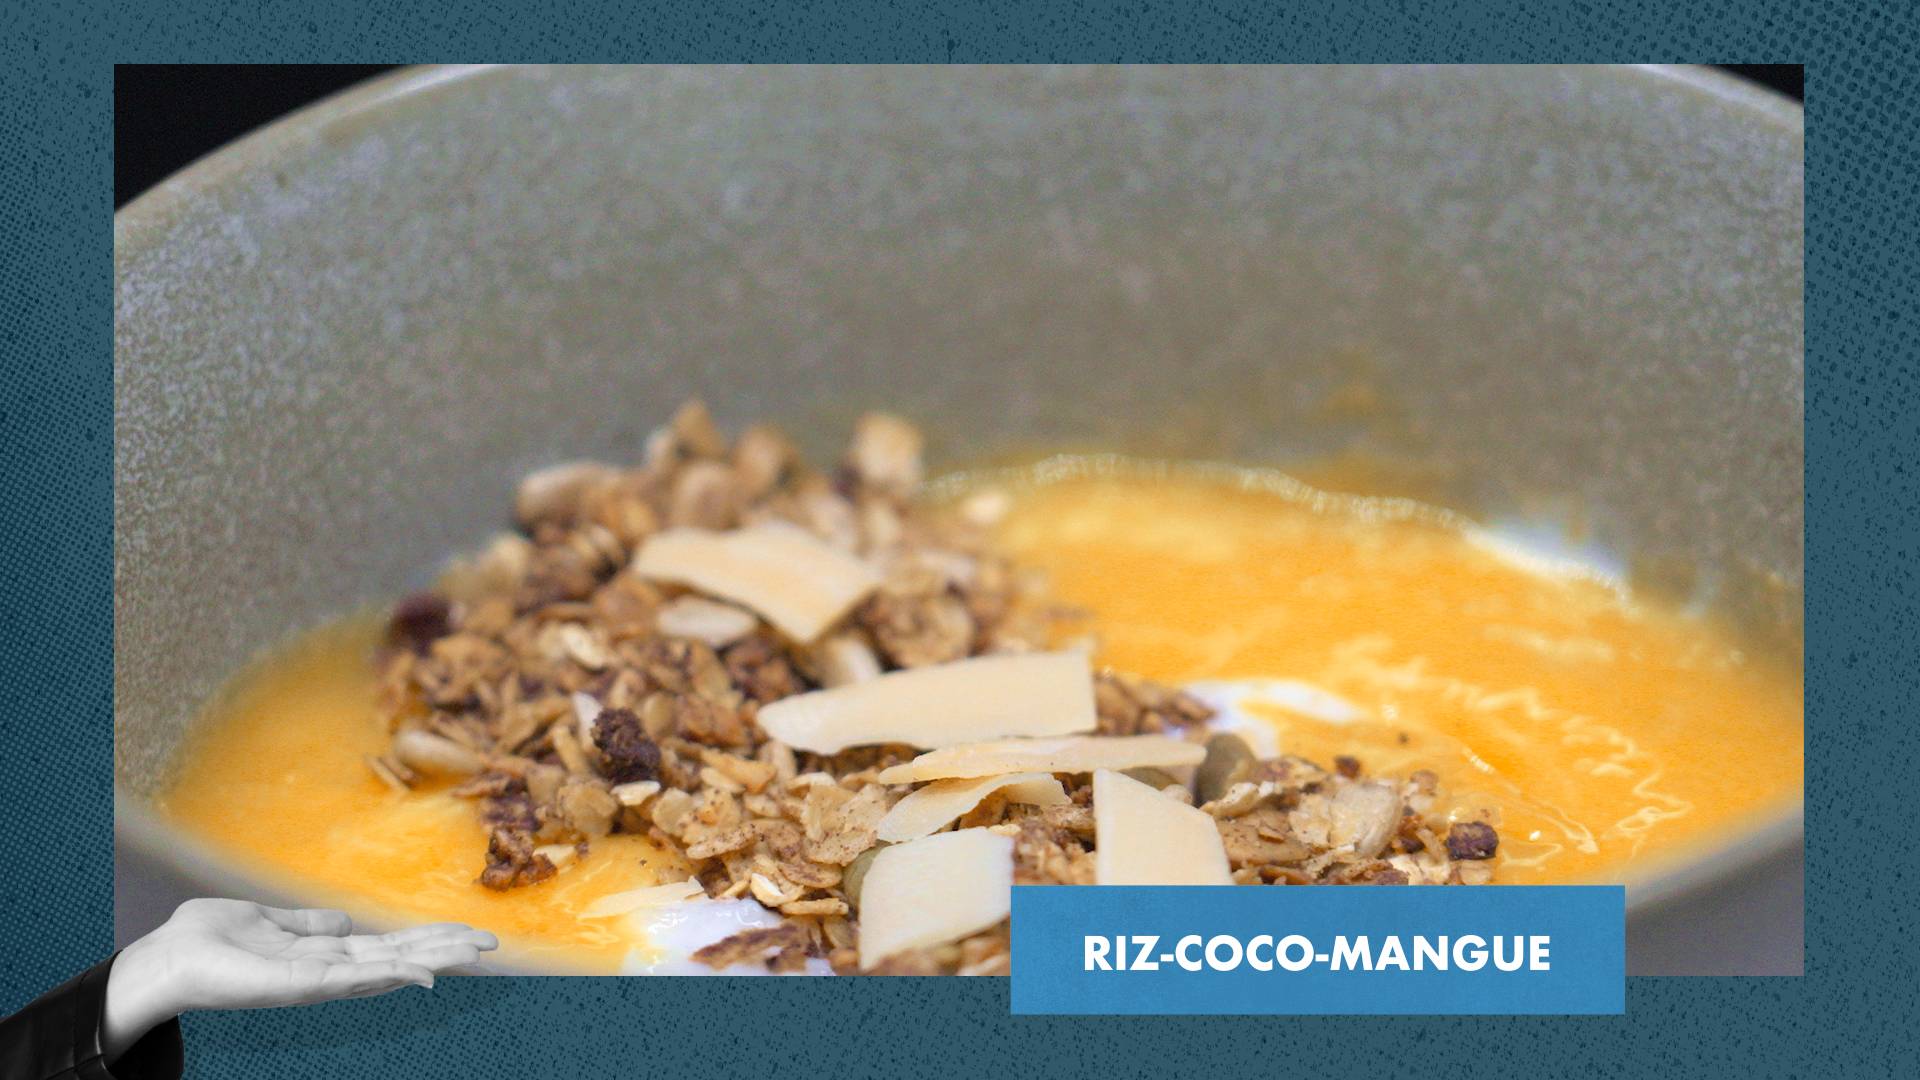 Riz-coco-mangue